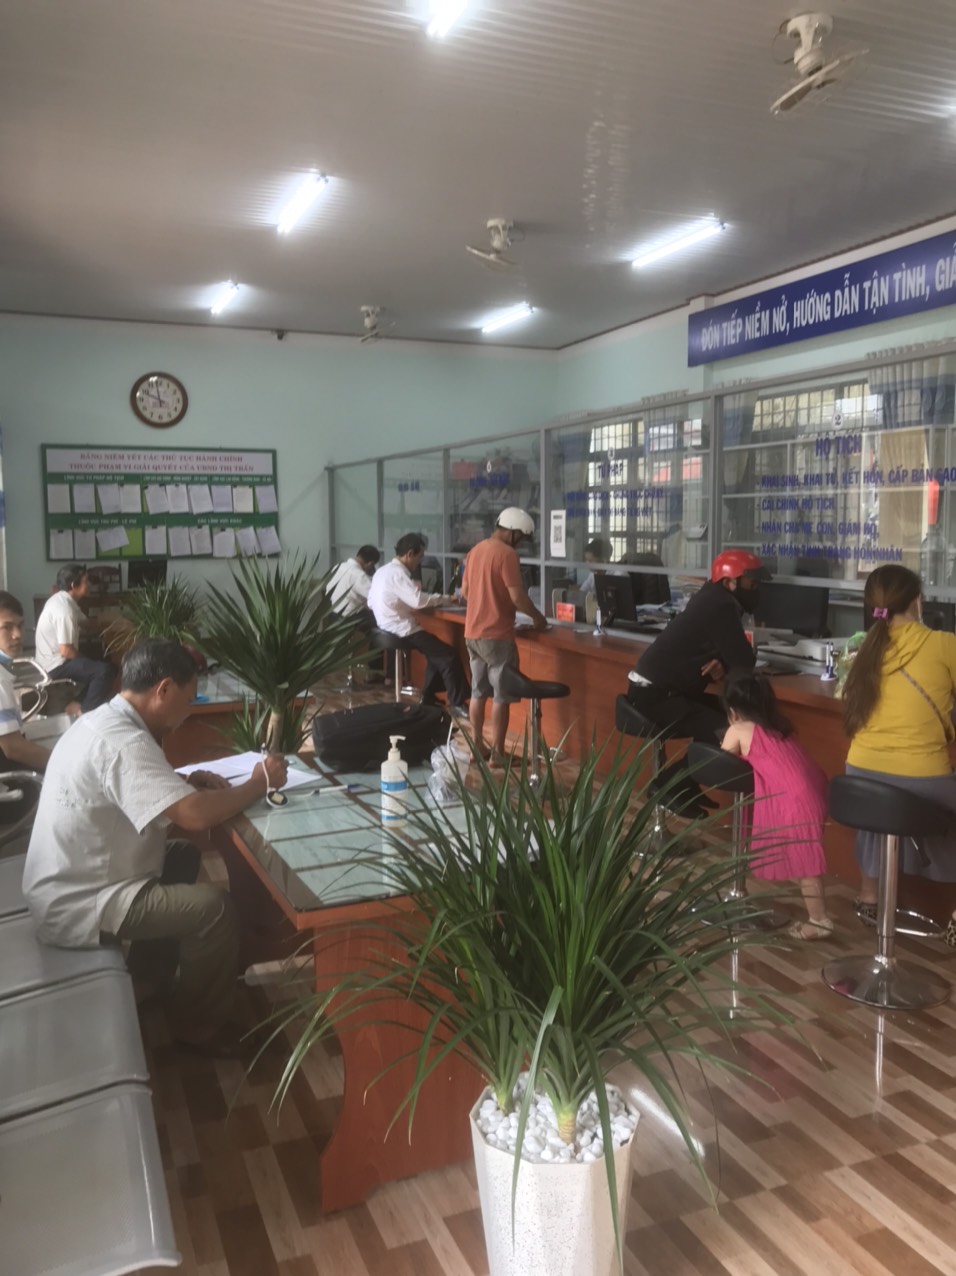  UBND thị trấn Phước An nâng cao chất lượng hoạt động công vụ của đội ngũ cán bộ, công chức vì nhân dân phục vụ